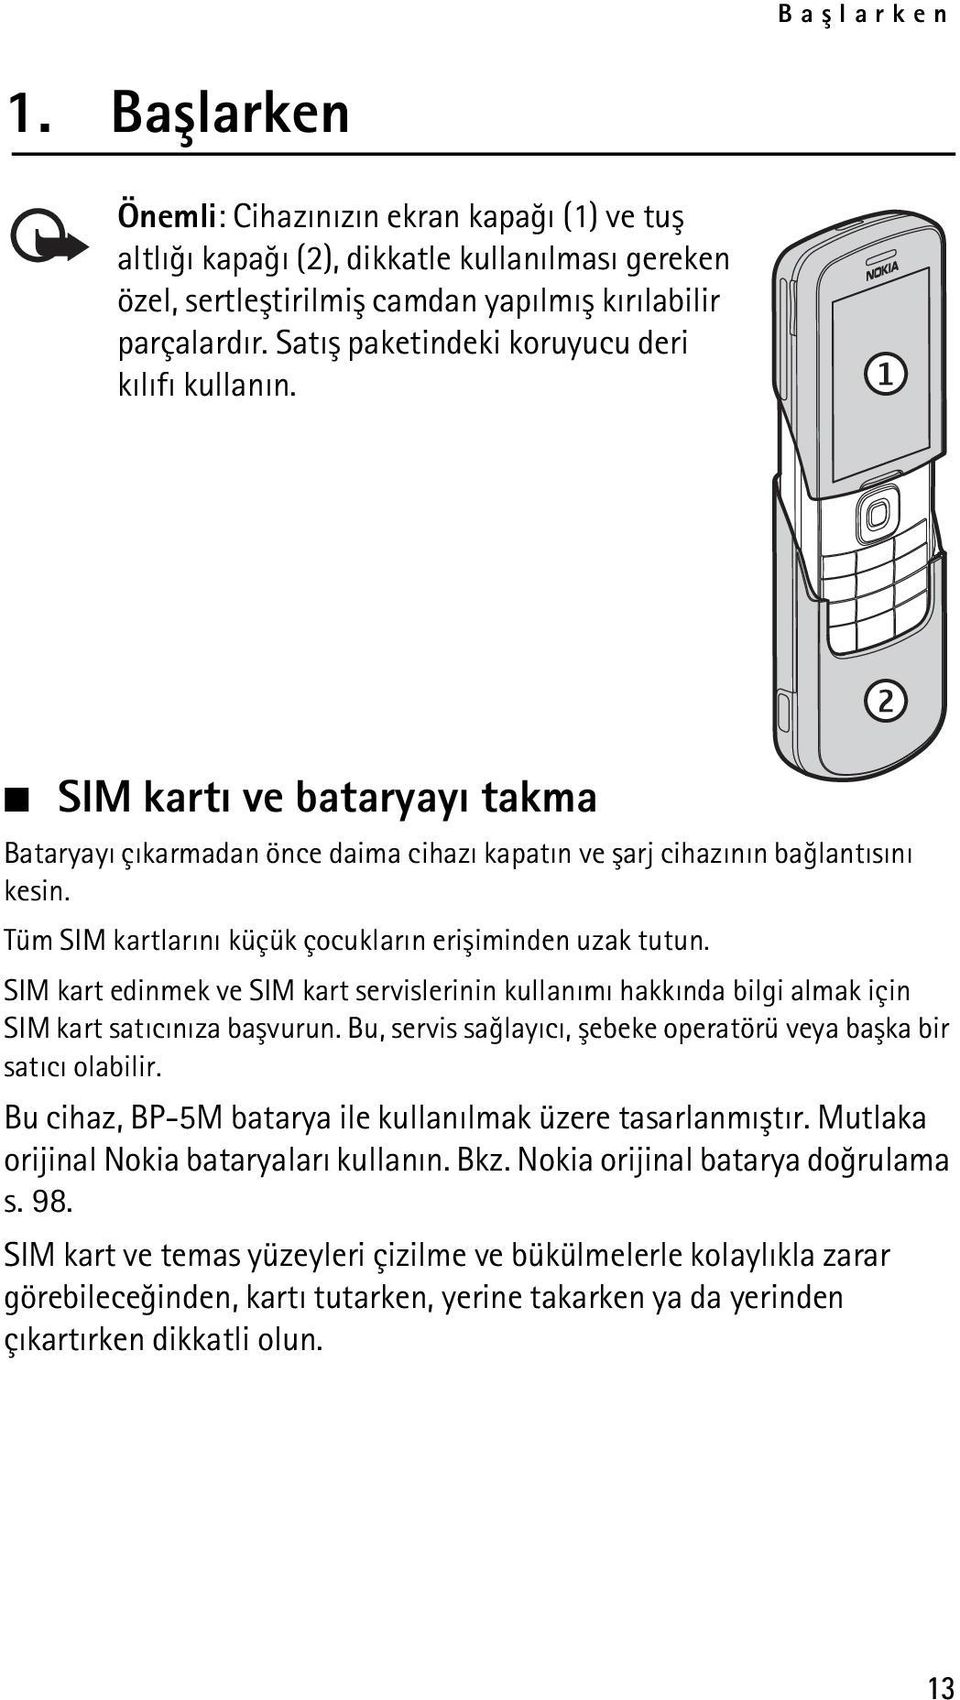 Tüm SIM kartlarýný küçük çocuklarýn eriþiminden uzak tutun. SIM kart edinmek ve SIM kart servislerinin kullanýmý hakkýnda bilgi almak için SIM kart satýcýnýza baþvurun.